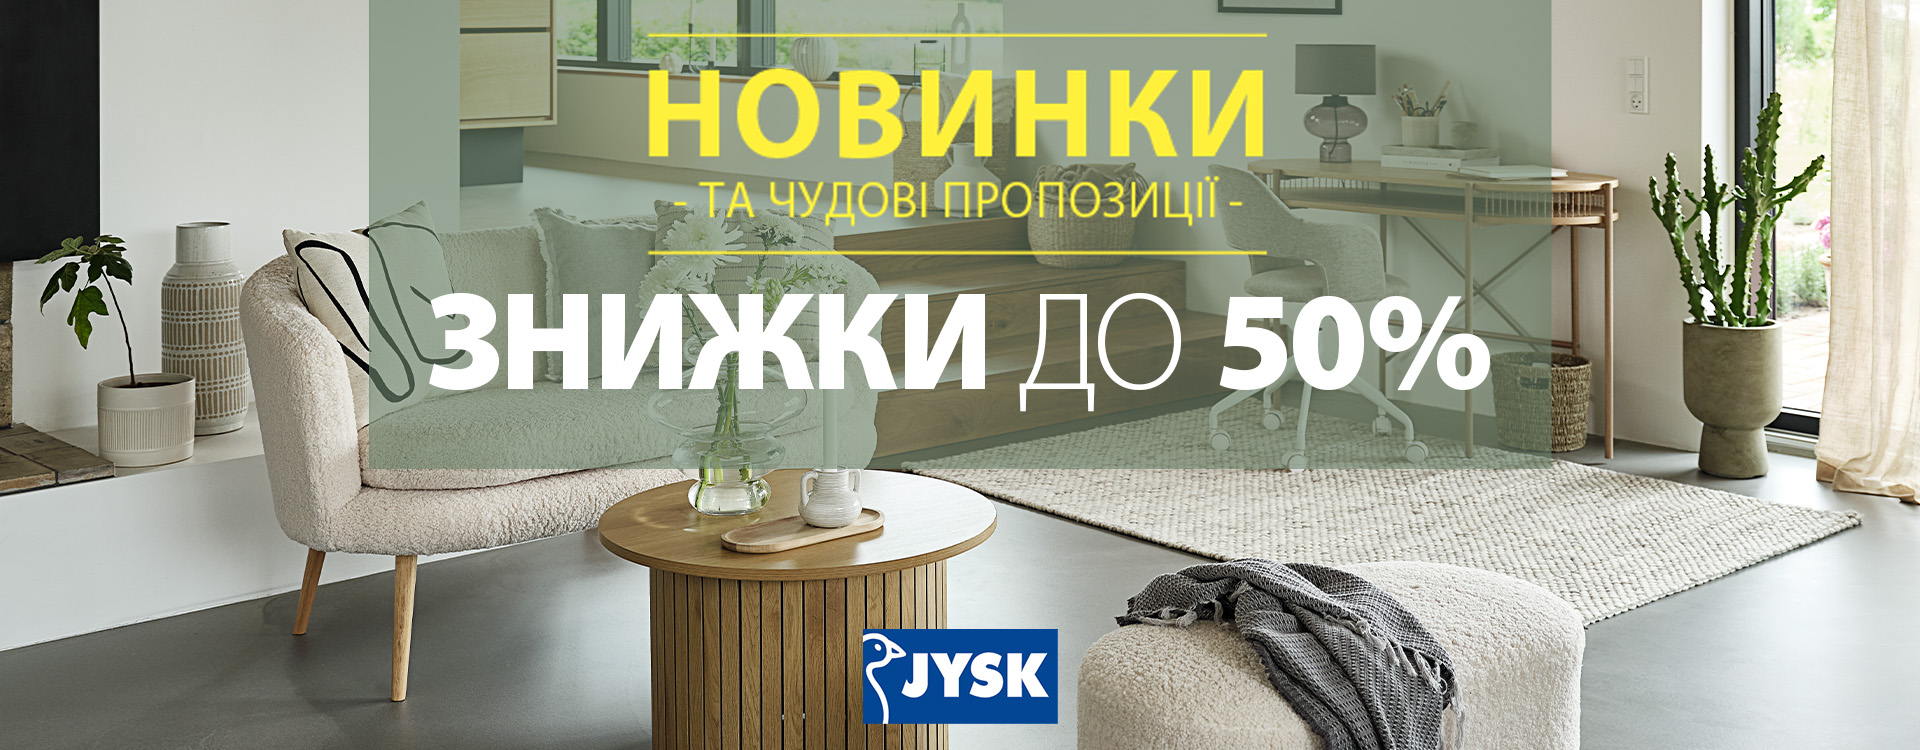 Знижки до 50% на понад 1000 товарів в JYSK